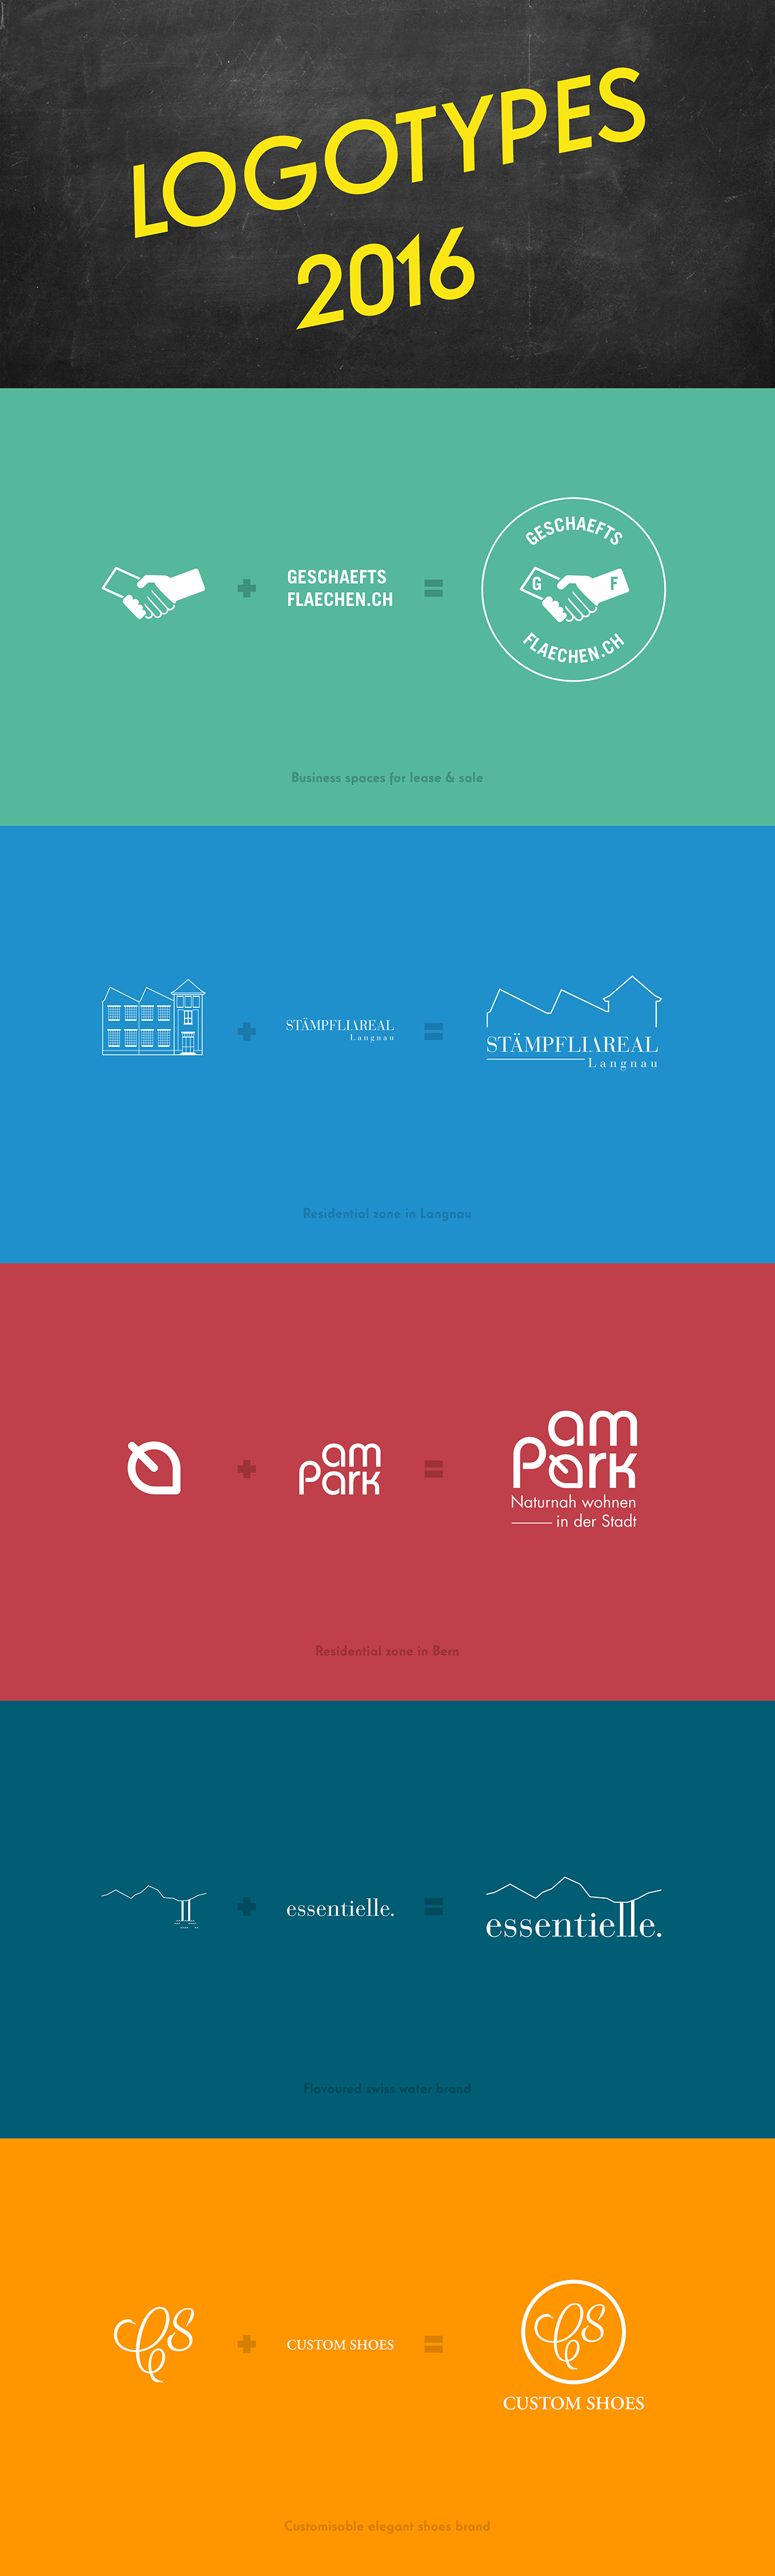 logotypes logo logos creation